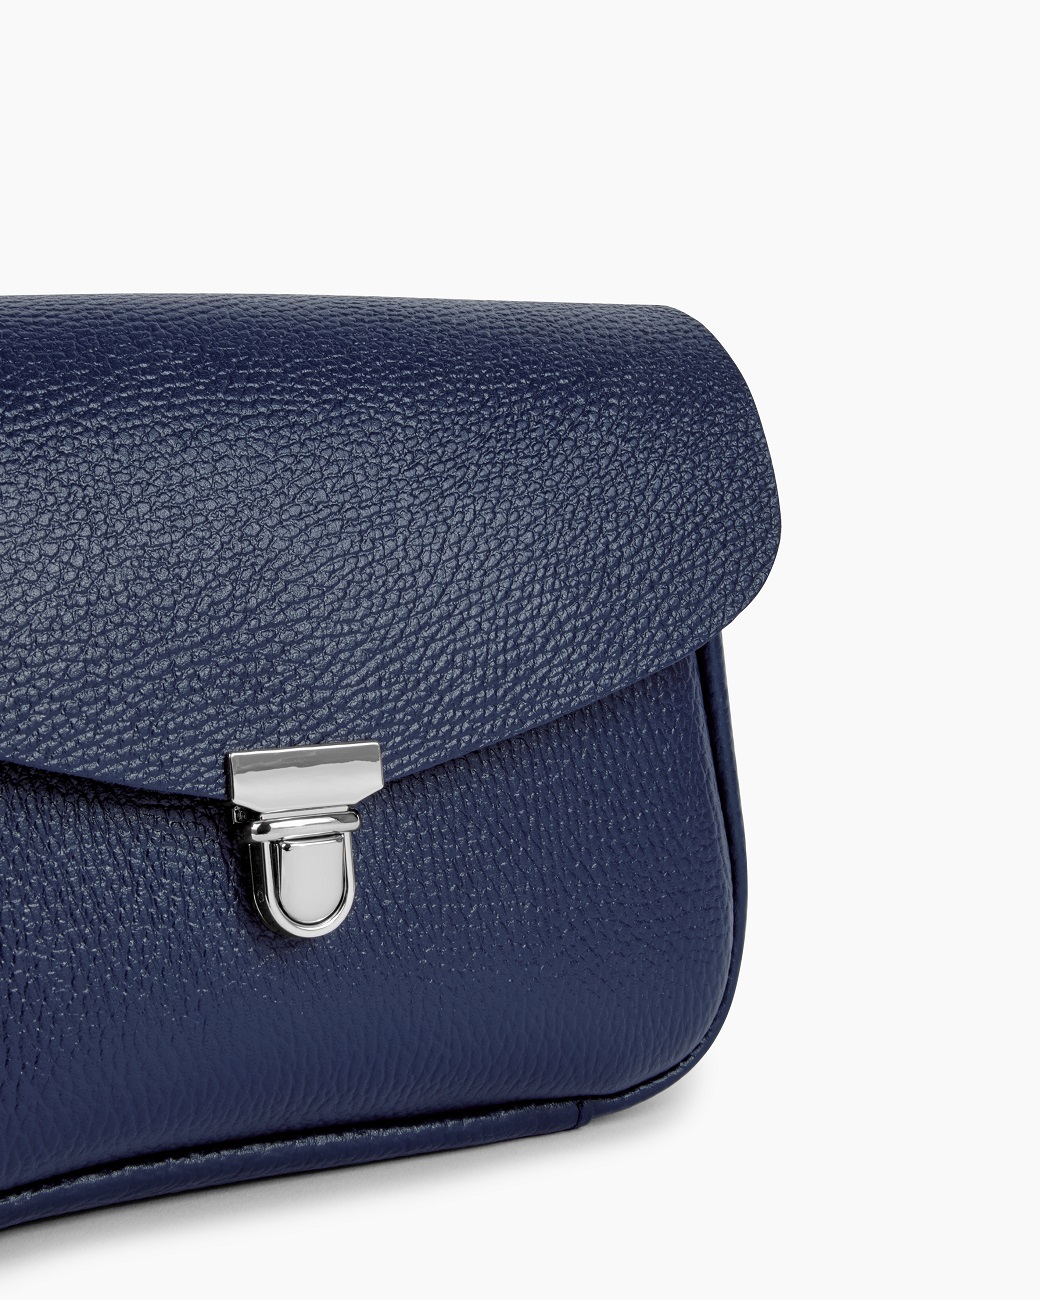 Женская сумка через плечо из натуральной кожи синяя A001 sapphire grain